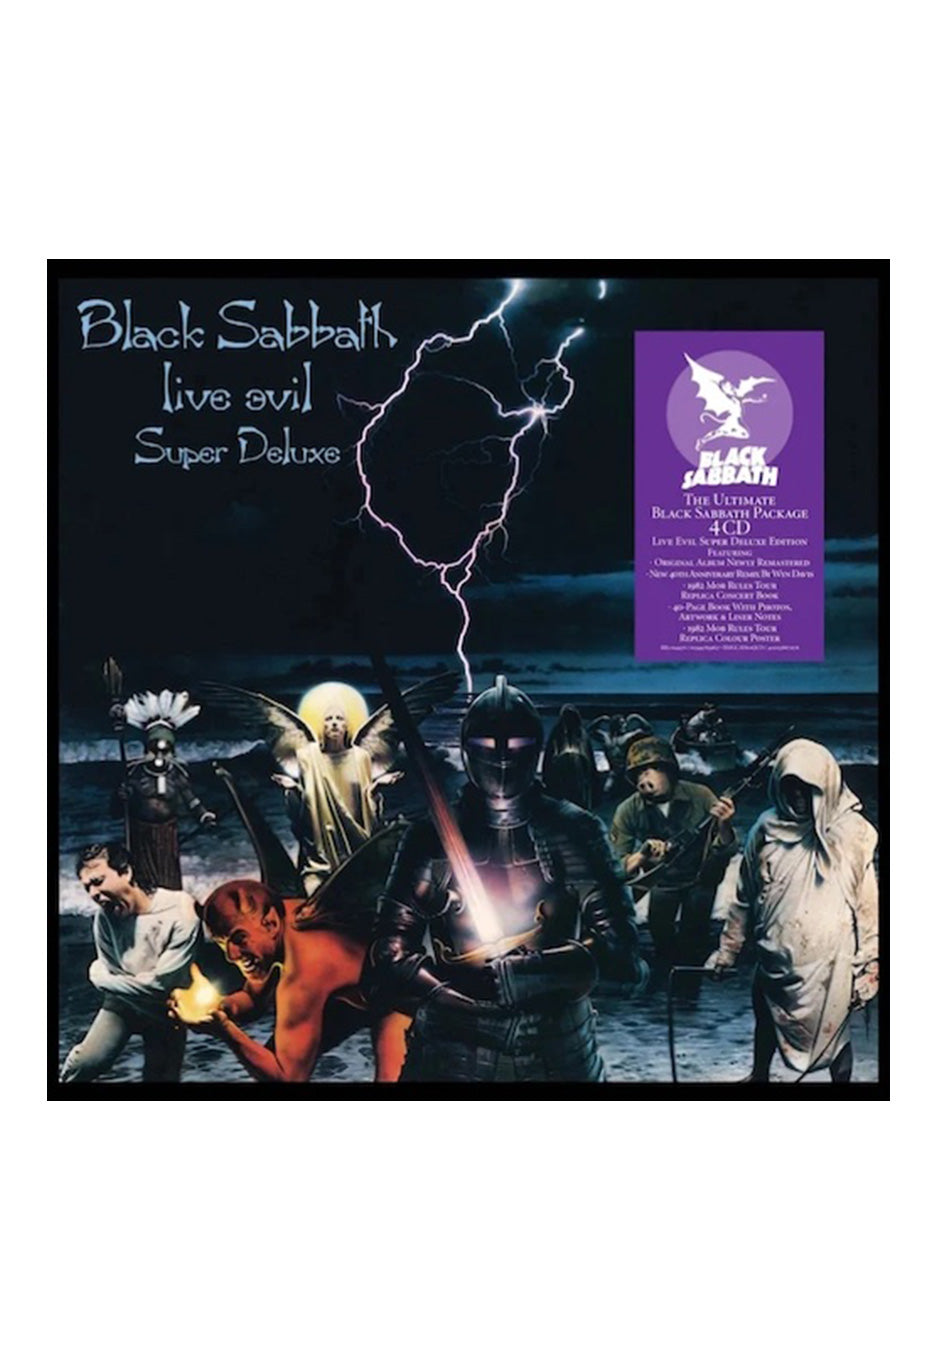 Black Sabbath - Live Evil (Super Deluxe 40th Anniversary Edition) - 4 Vinyl